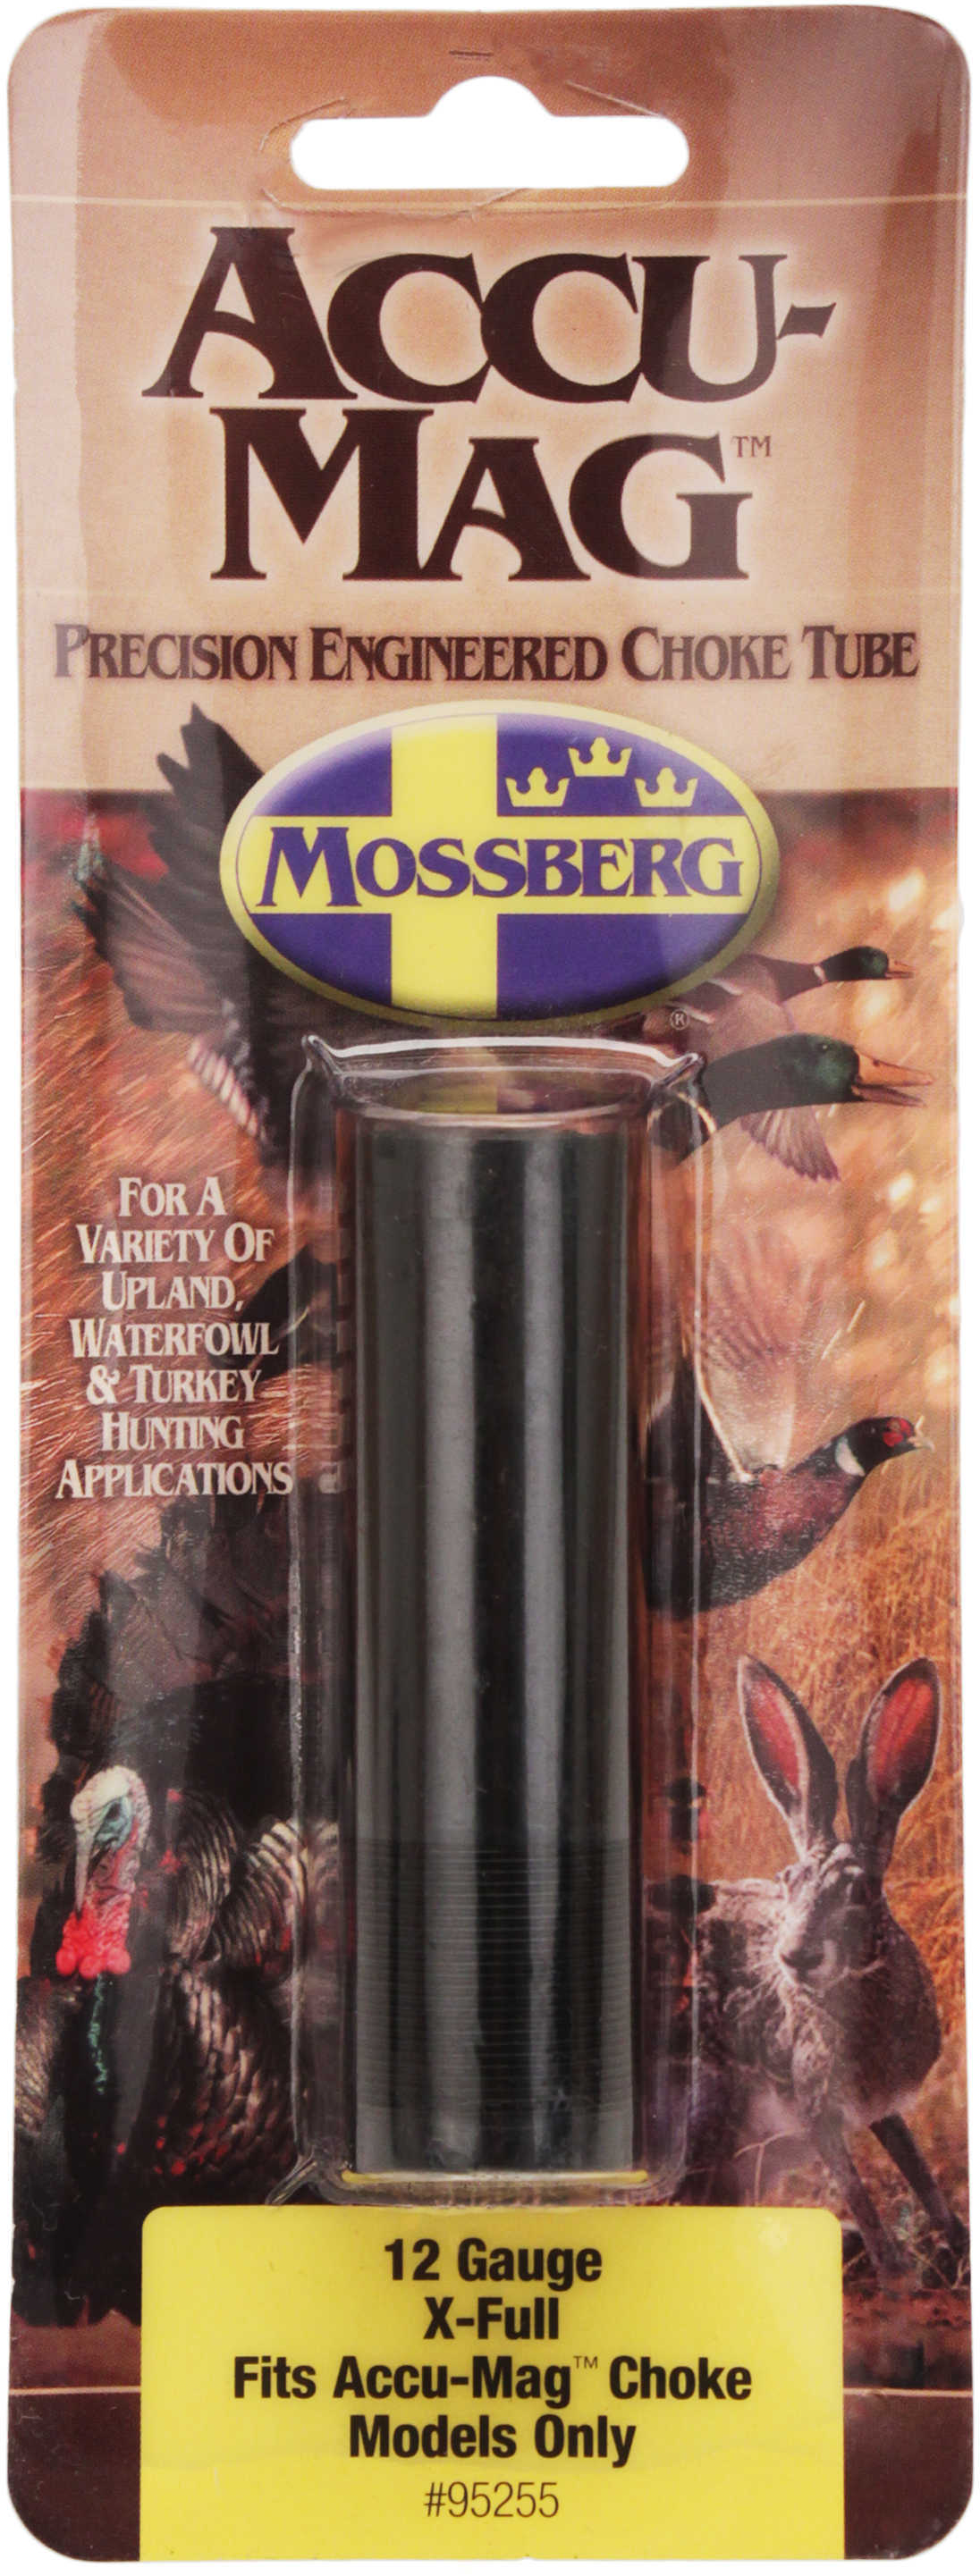 Mossberg Accu-Mag Choke Tube 12 Gauge, X-Full 95255